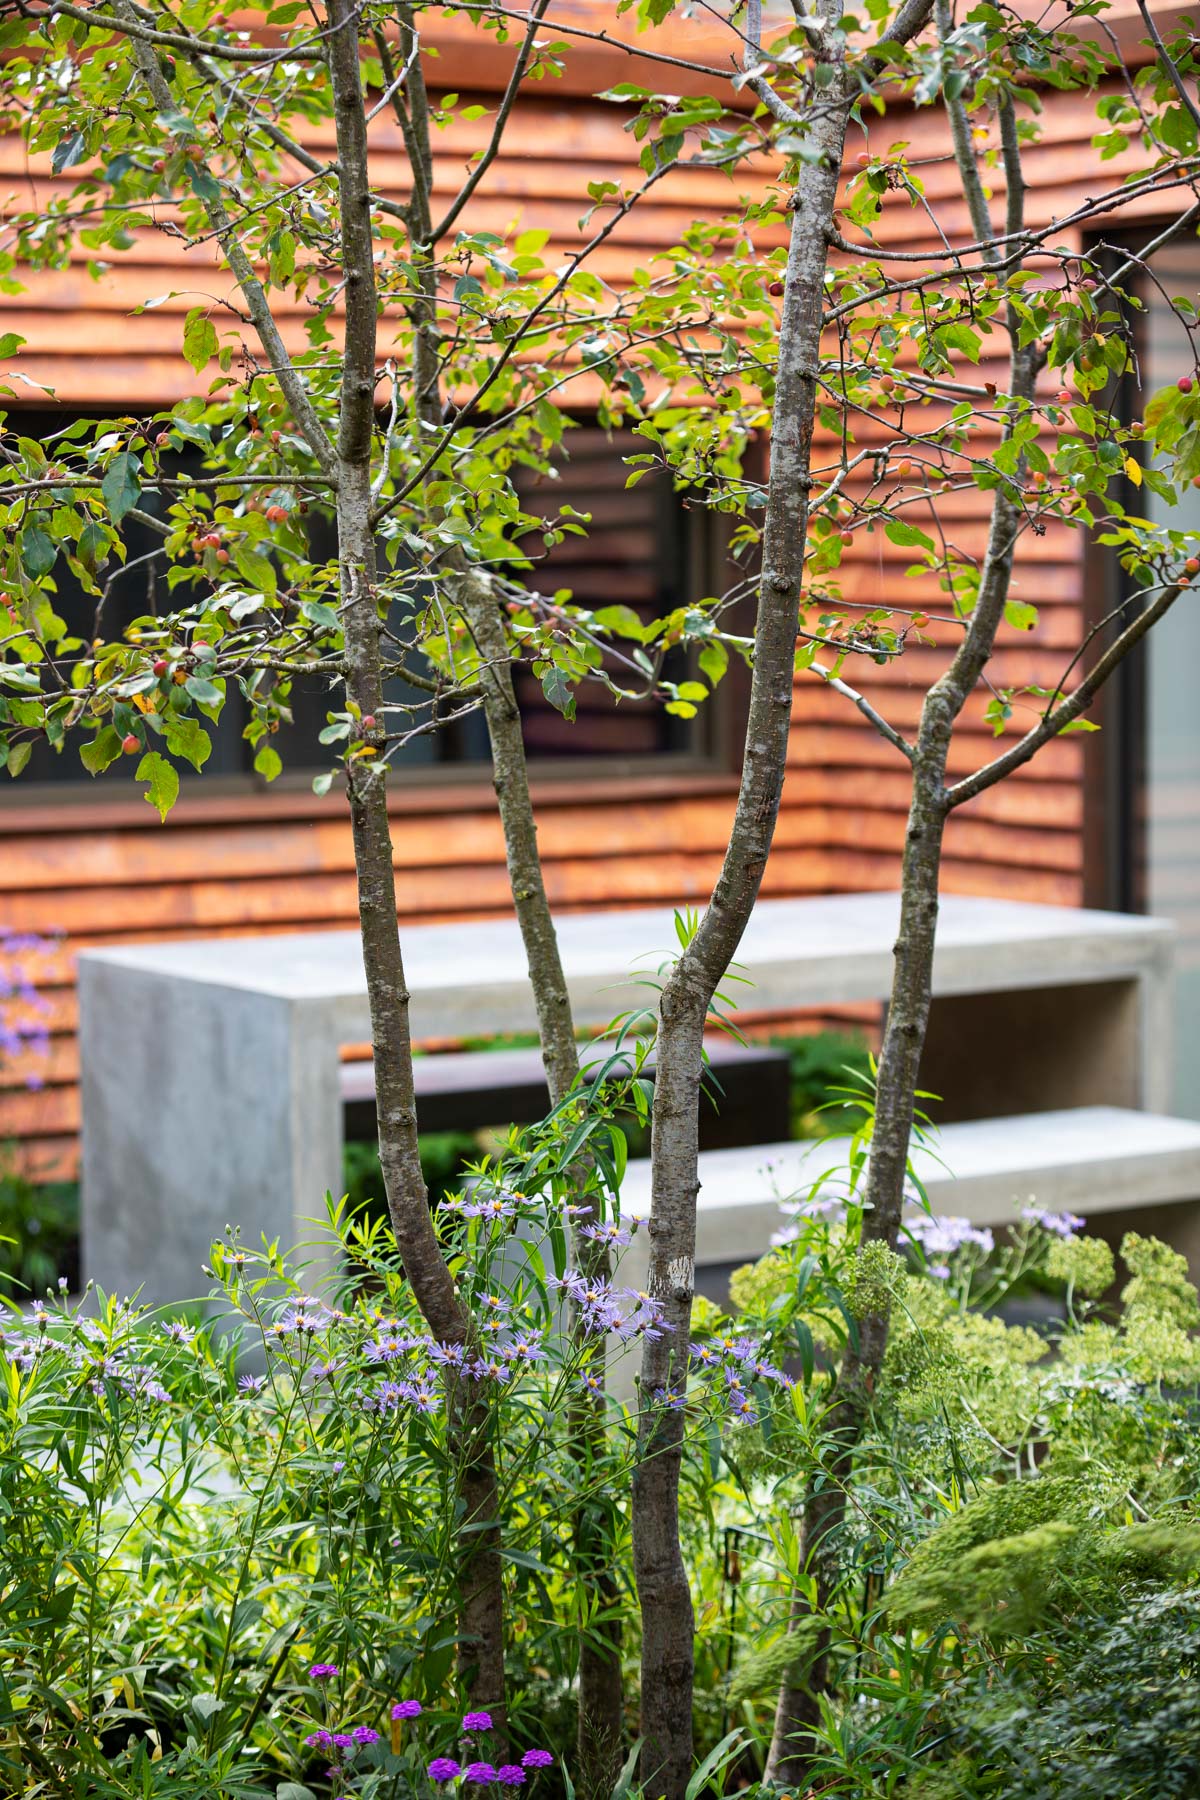 Colm Joseph Cambridge garden designers concrete furniture through perennial planting multi-stem crab apple tree